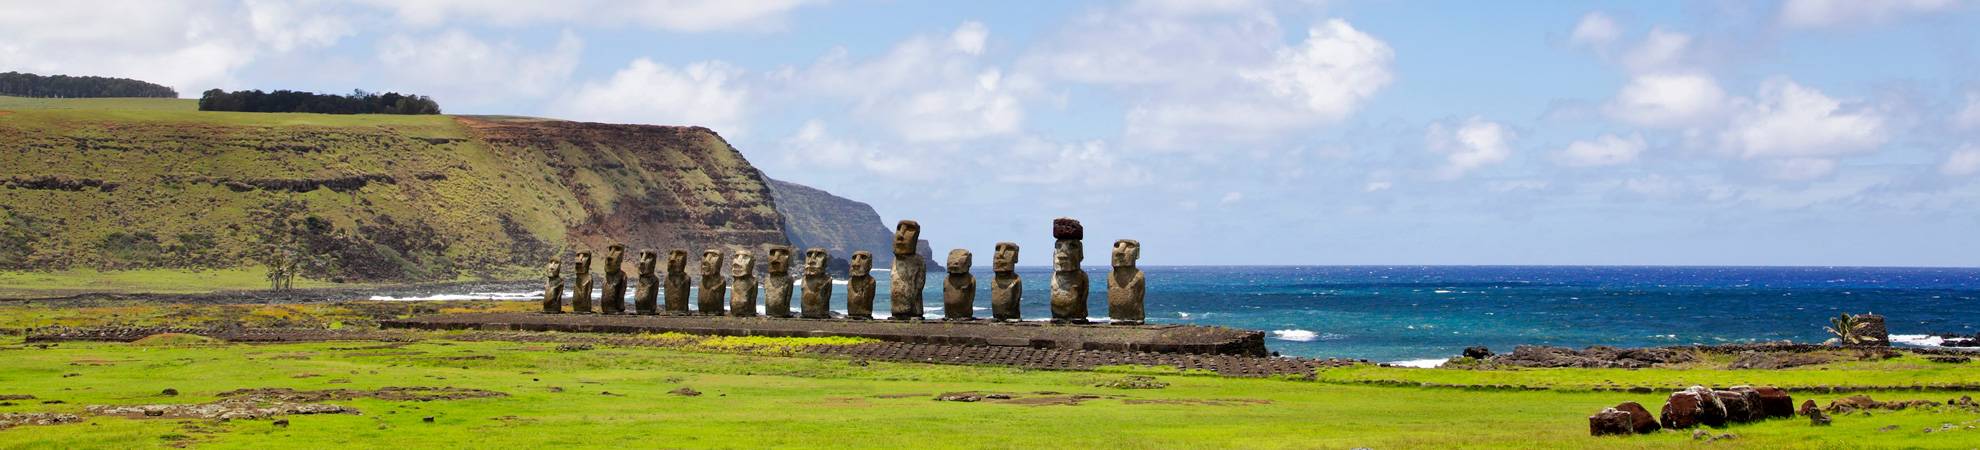 Takona Rapa Nui  Peinture corporelle de l'île de Pâques